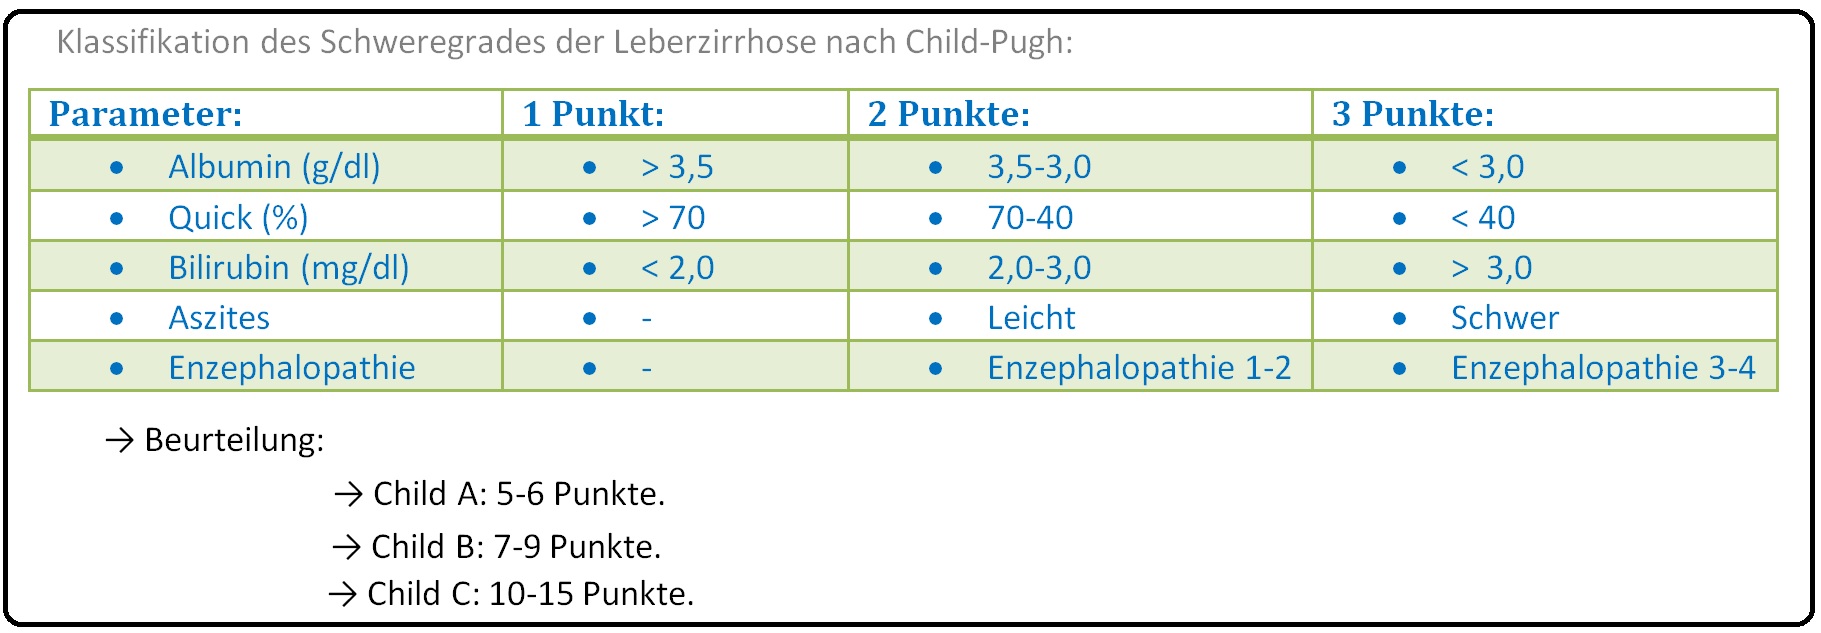 444 Klassifikation des Schweregrades der Leberzirrhose nach Child Pugh